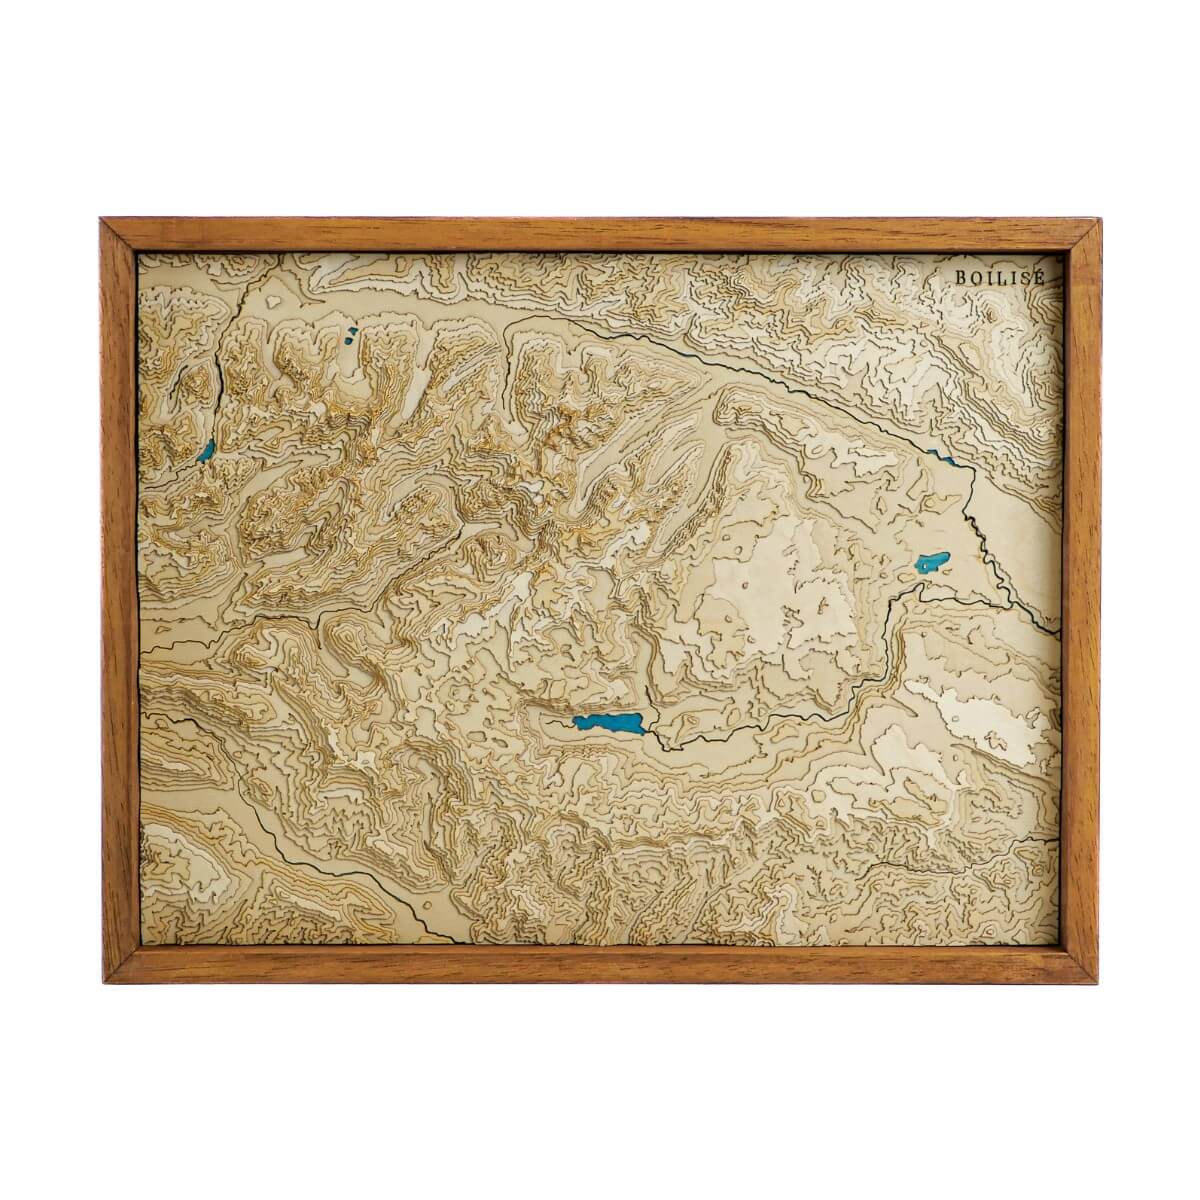 Carte topographique en bois et en relief des Alpes Juliennes avec une eau bleu marine, encadrée de manière standard en bois brun